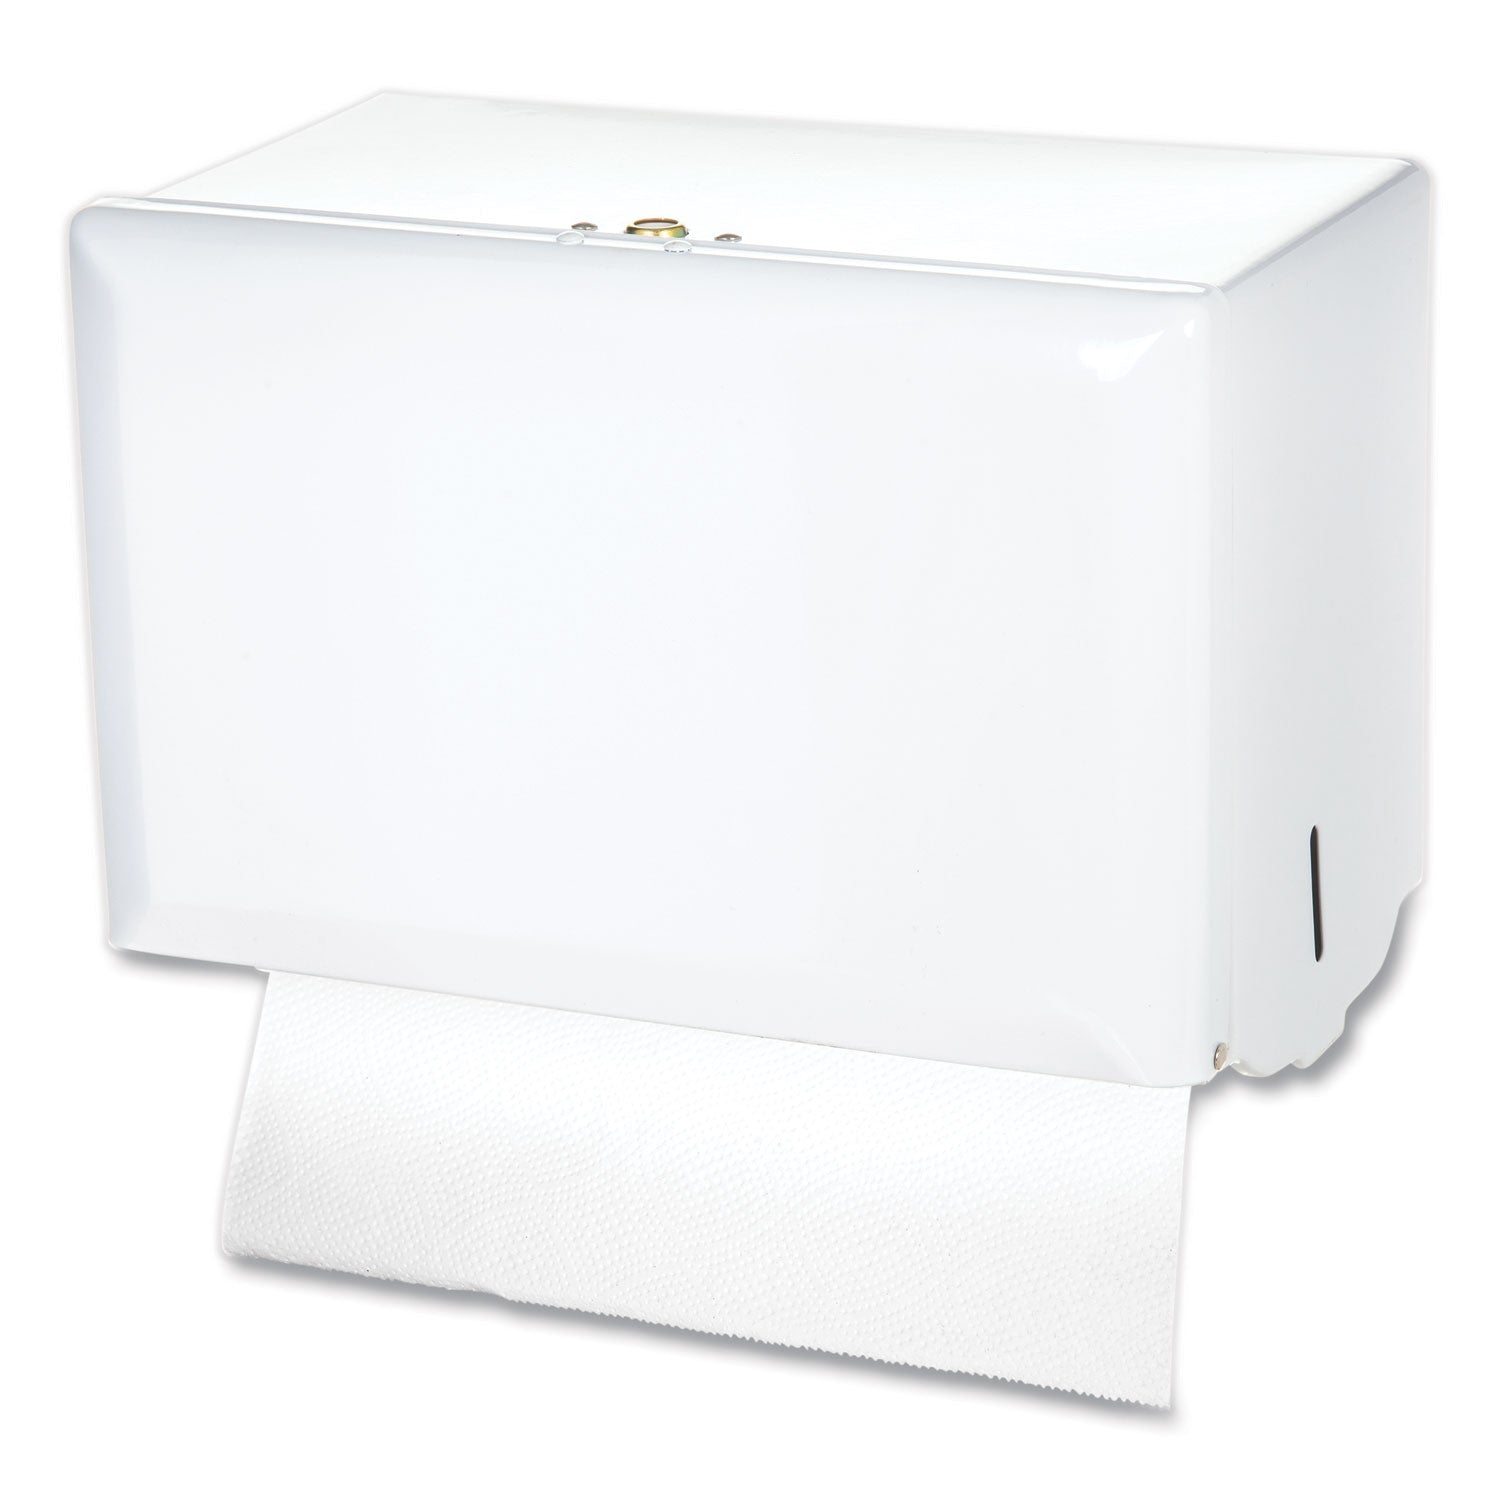 Singlefold Paper Towel Dispenser, 10.75 x 6 x 7.5, White - 